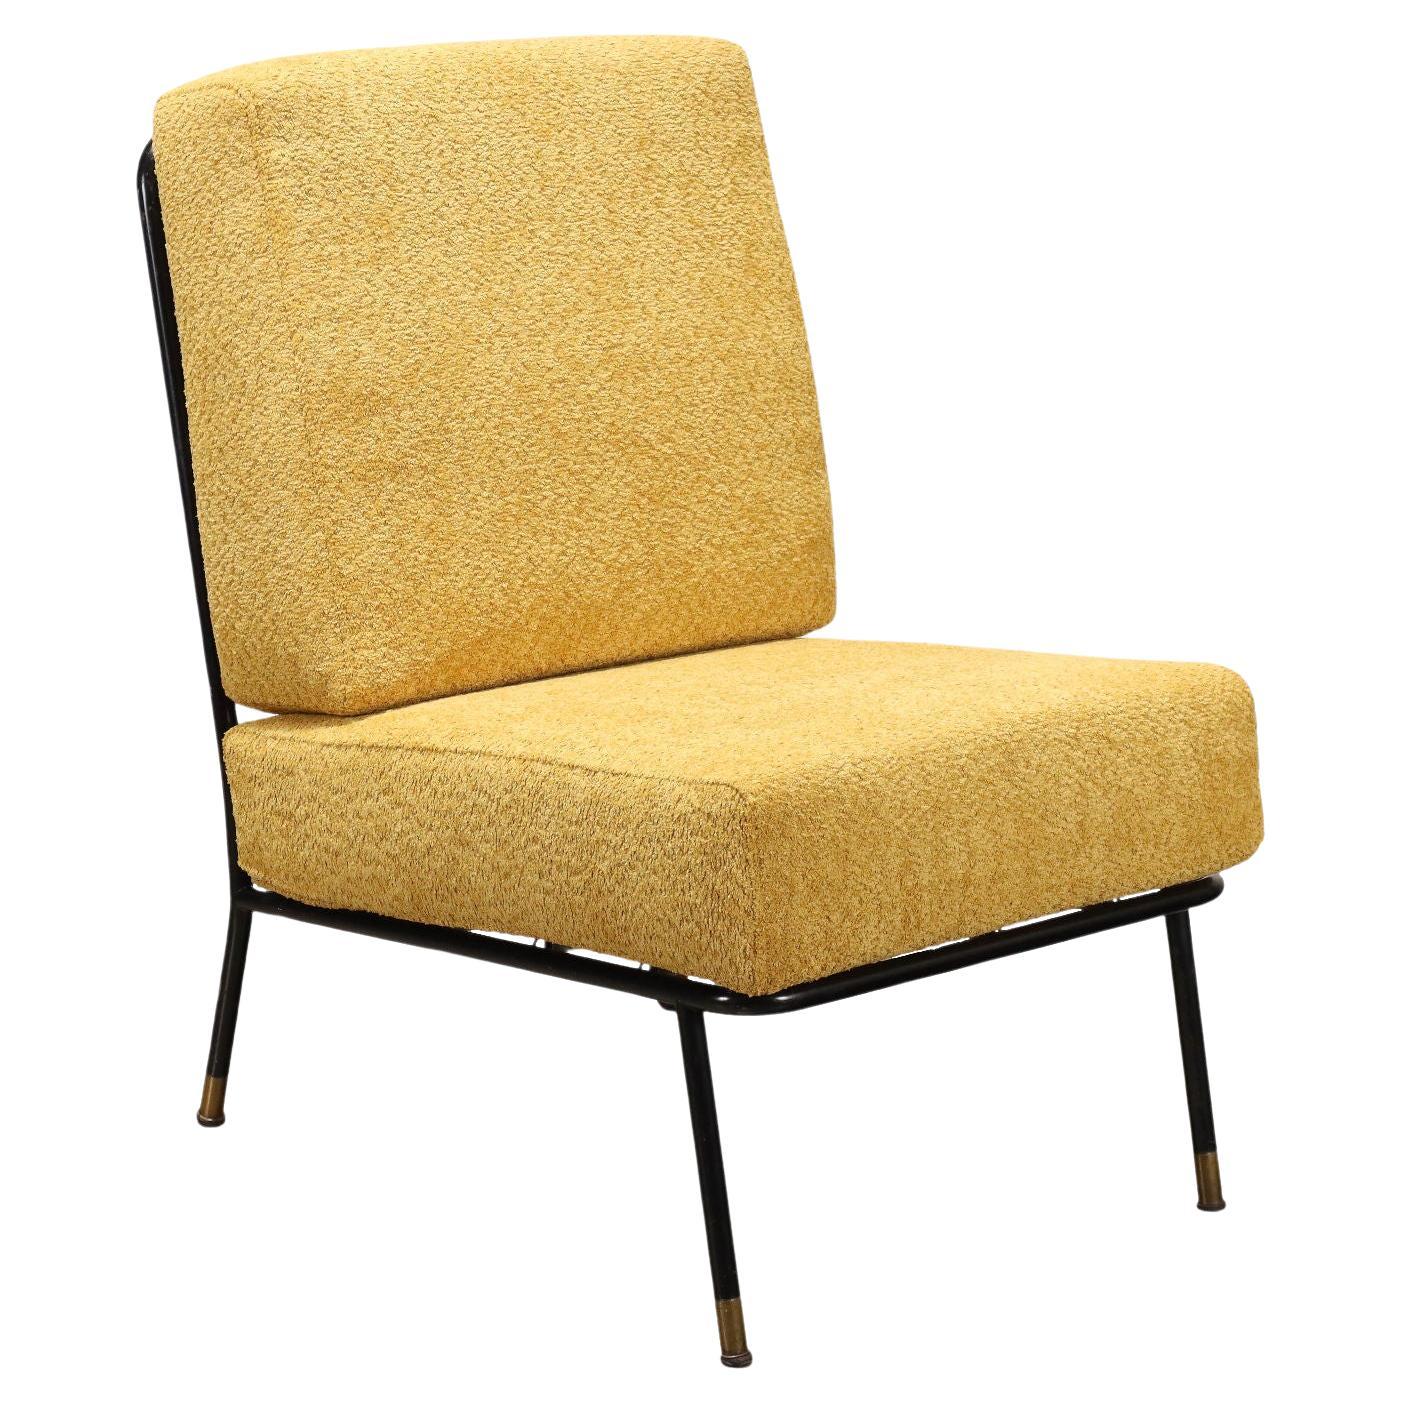 Sessel aus ockerfarbenem Stoff, 1960er Jahre